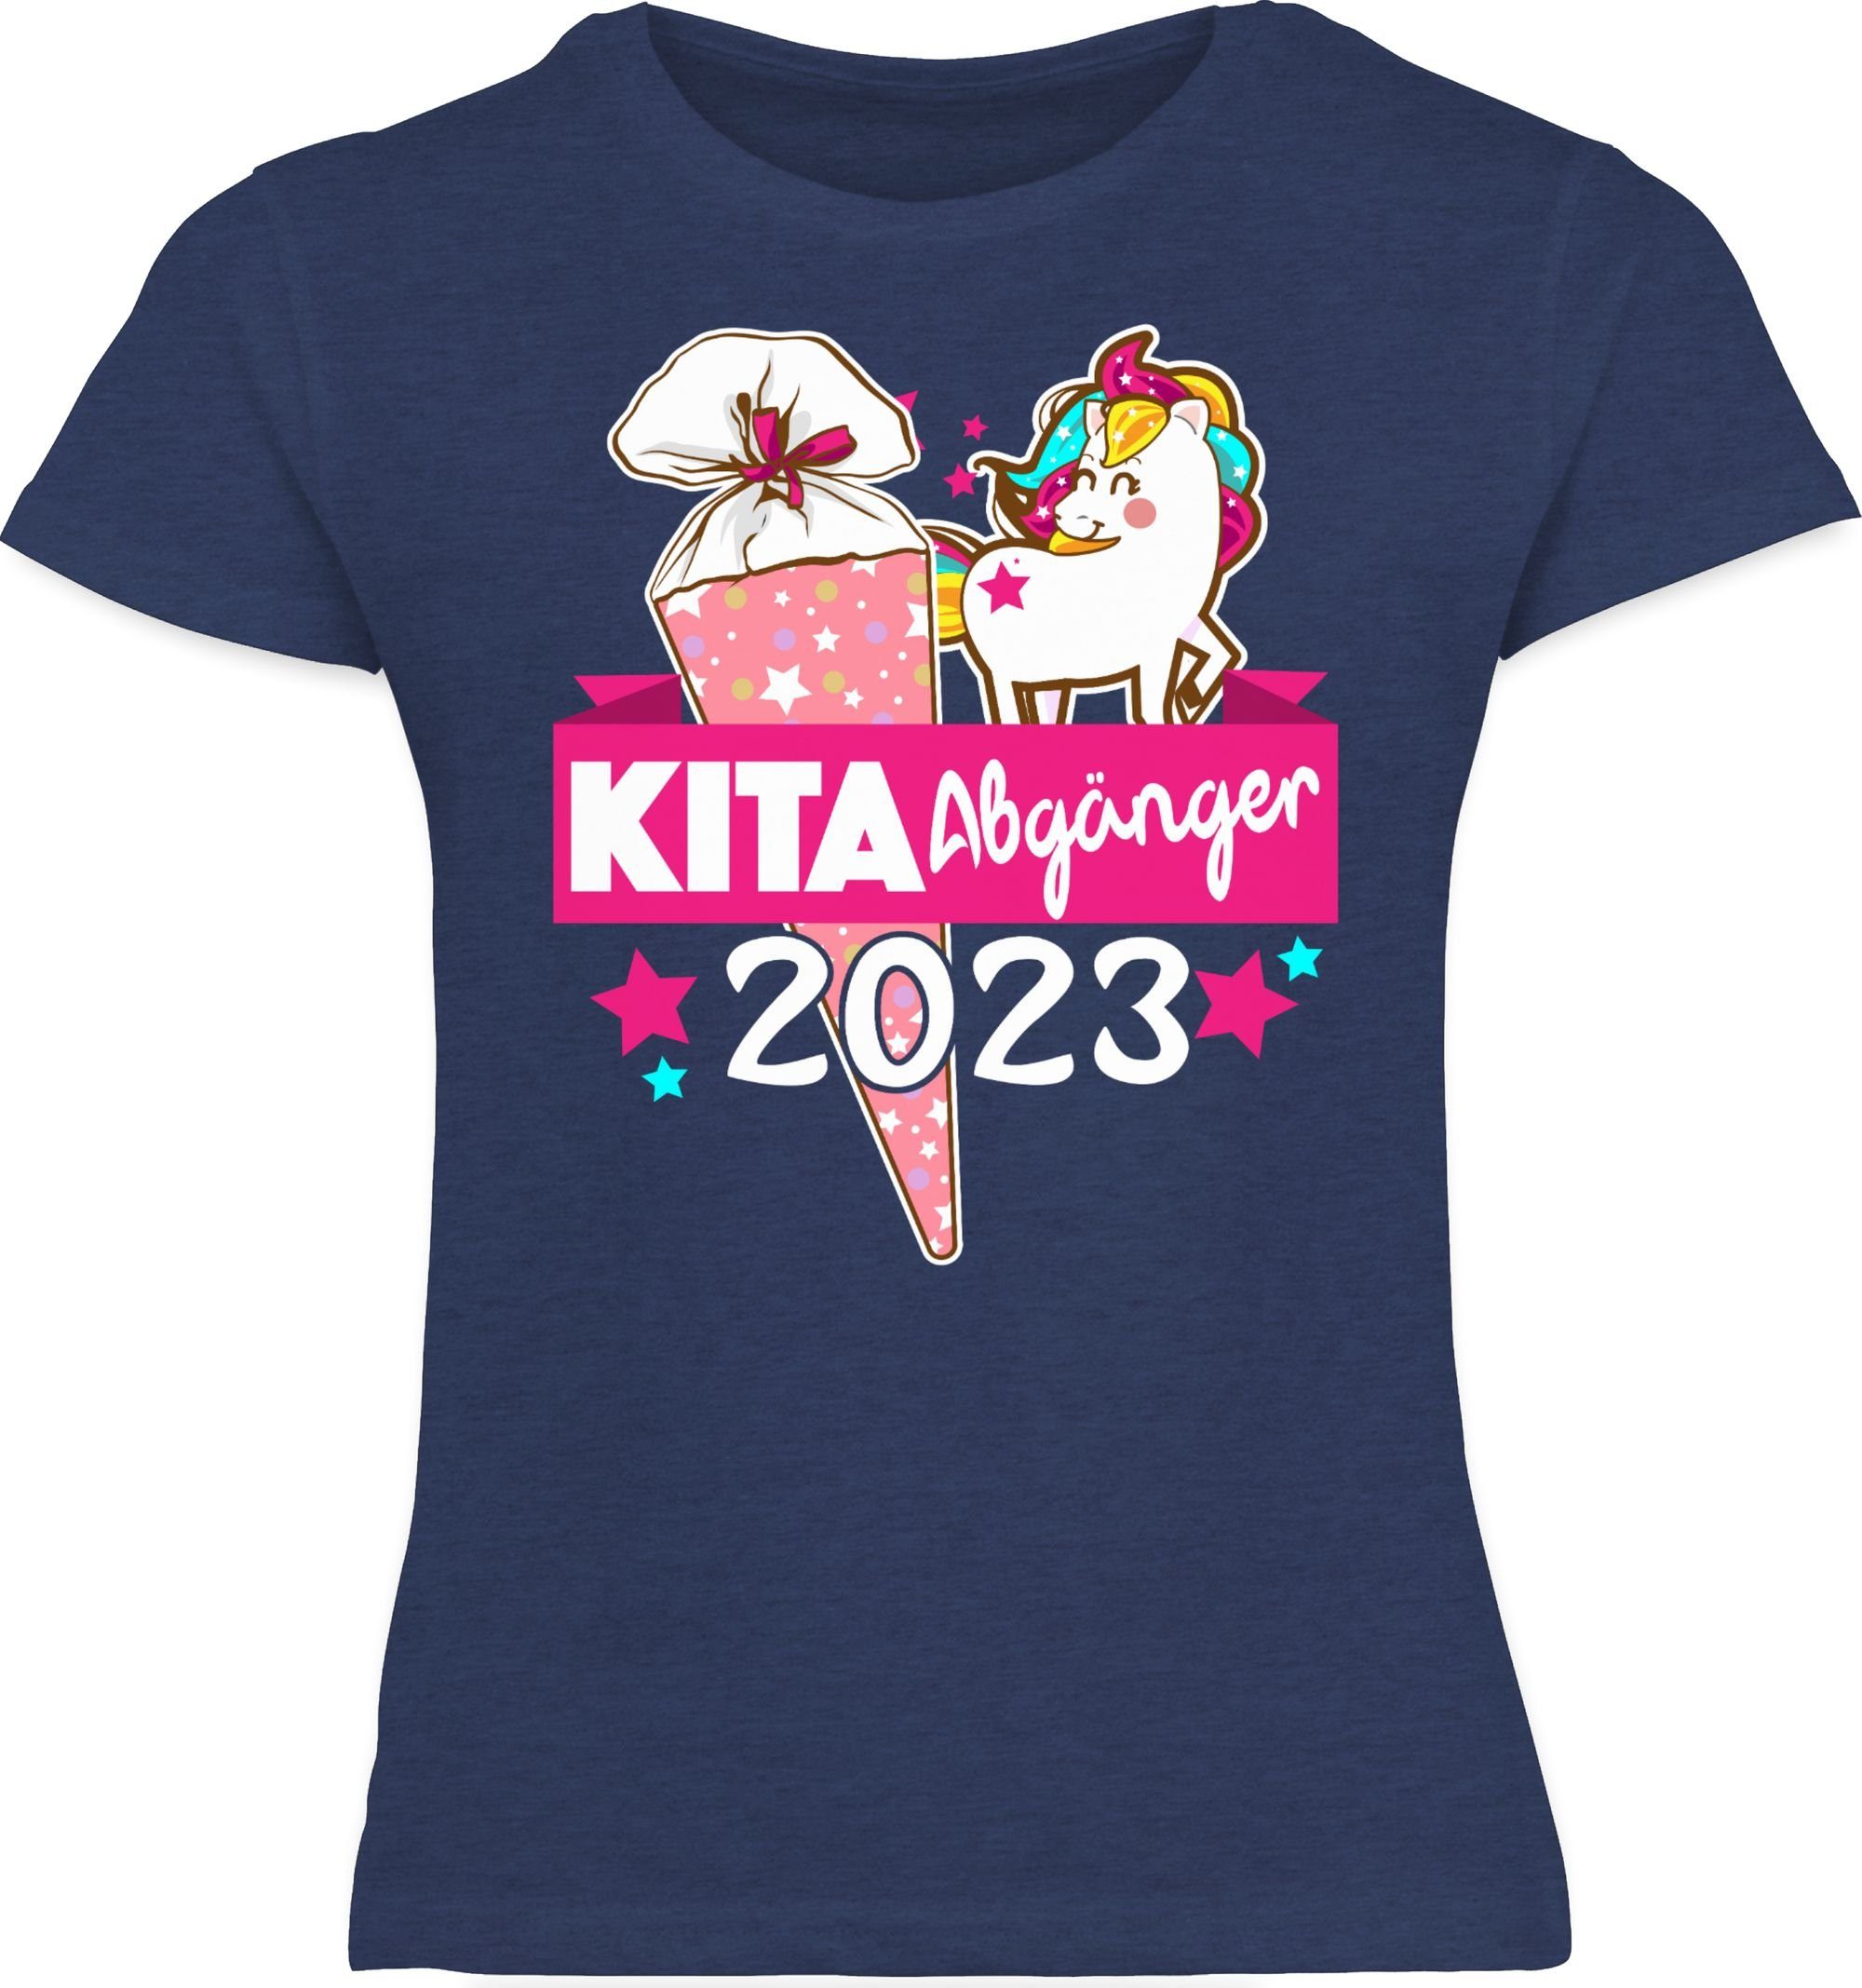 Einschulung 2023 T-Shirt Abgänger - Shirtracer Dunkelblau Meliert 2 Kita Mädchen